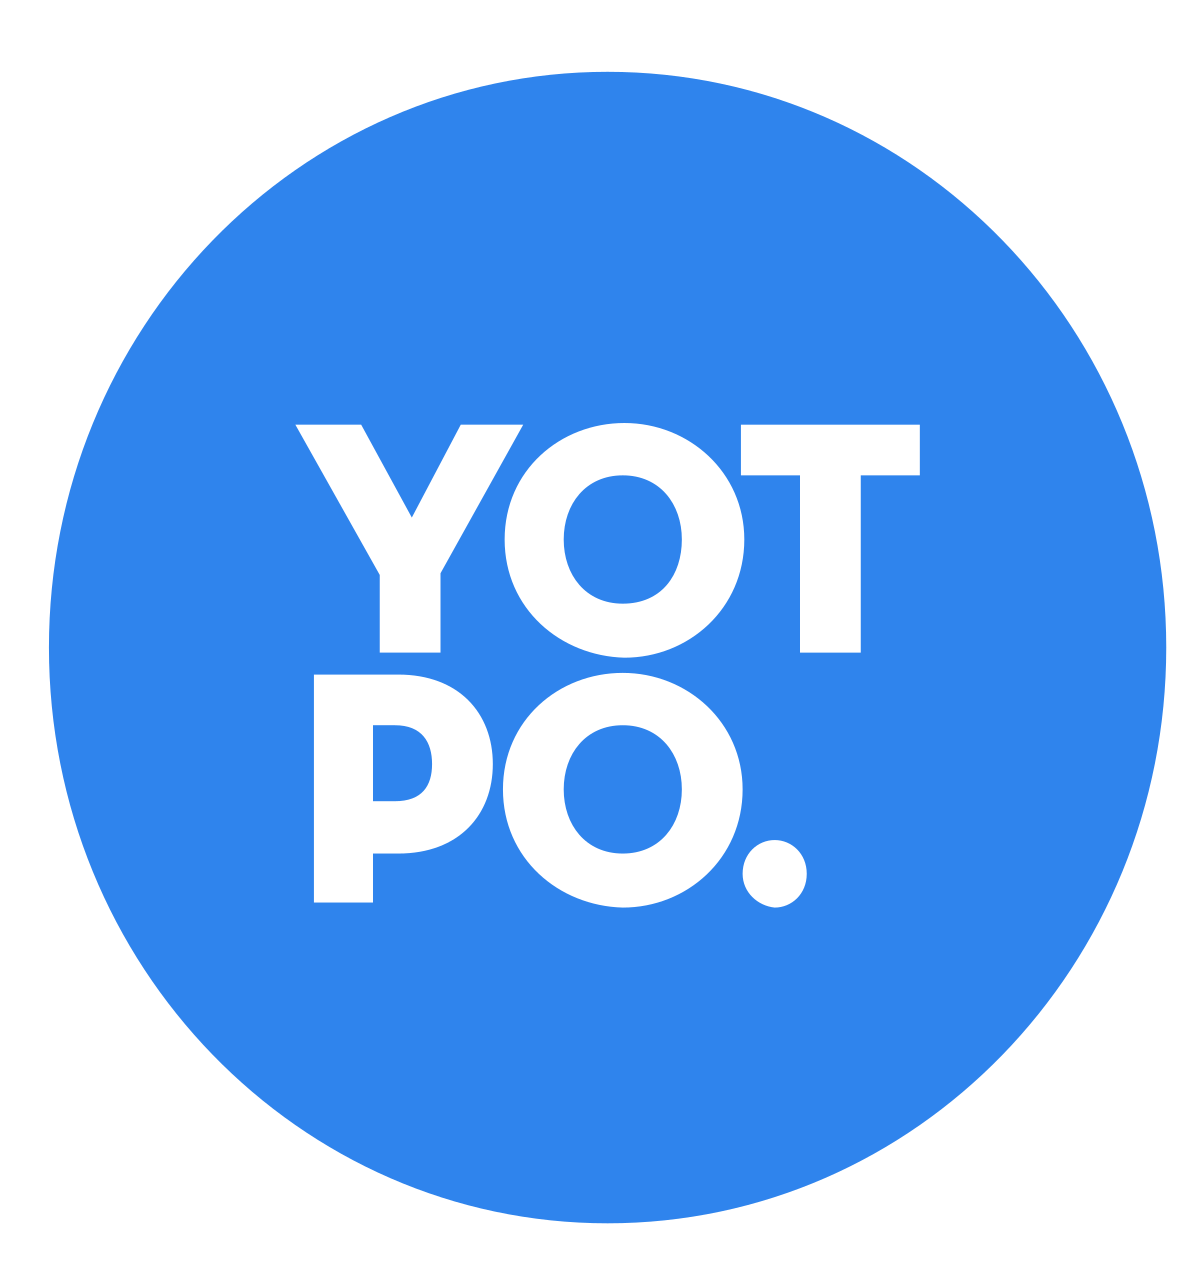 株式会社ギャプライズ YOTPO logo